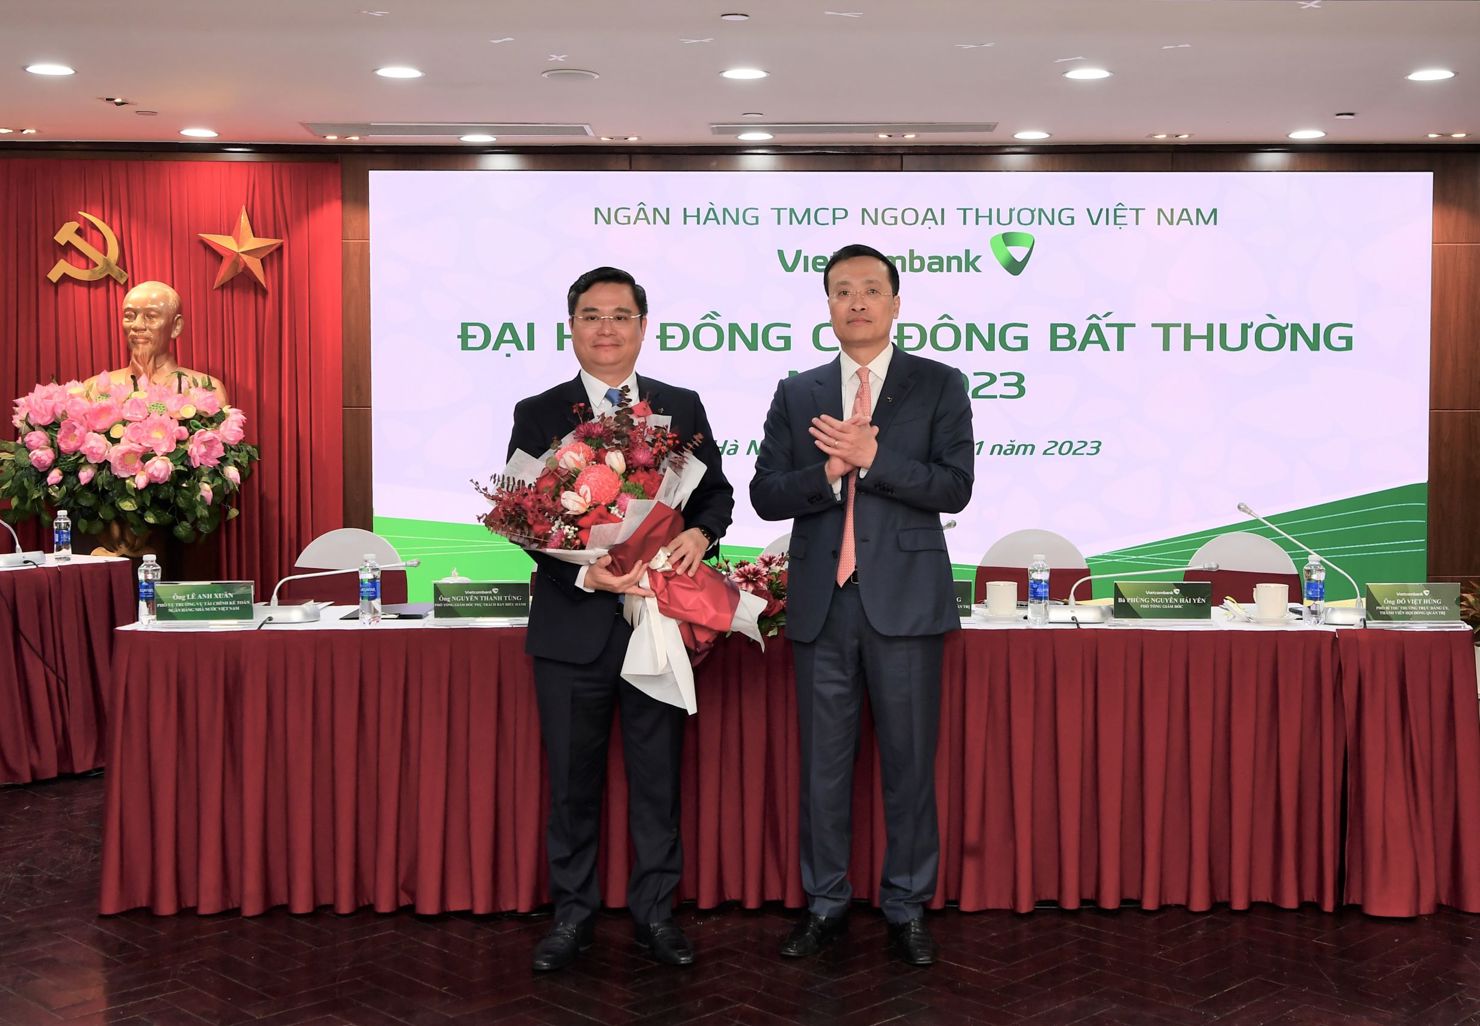 Ông Phạm Quang Dũng - Chủ tịch HĐQT Vietcombank (bên phải) tặng hoa chúc mừng ông Nguyễn Thanh Tùng – tân thành viên HĐQT Vietcombank nhiệm kỳ 2018 - 2023